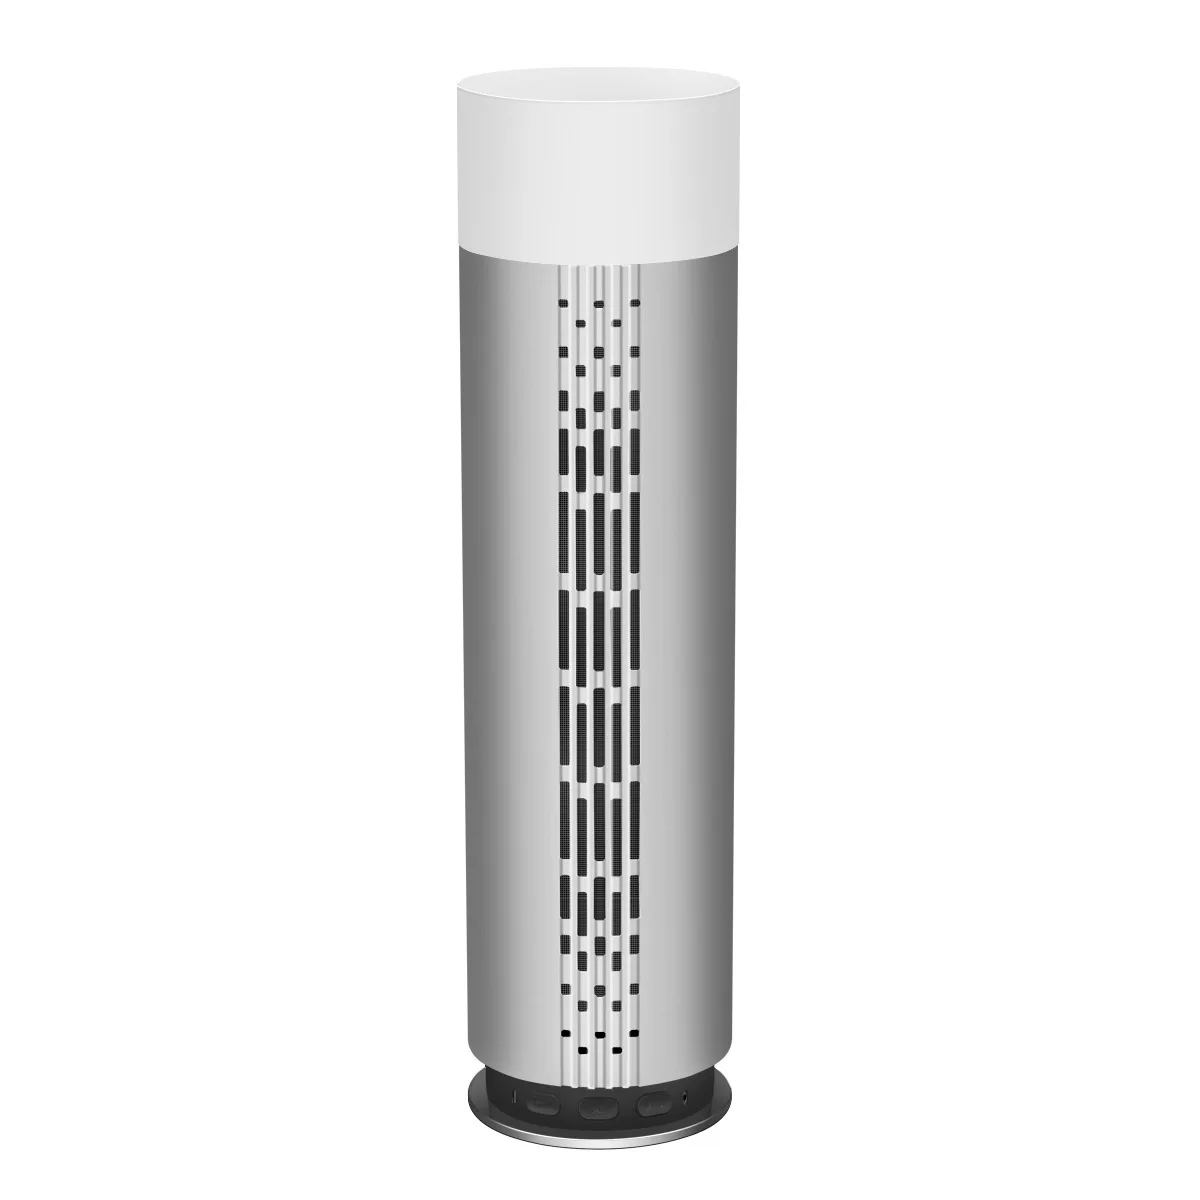 Z3 интеллектуальная bluetooth-колонка светильники индукции лампа стерео большой Батарея качеством звука Hi-Fi светодиодный интеллектуальная bluetooth-колонка